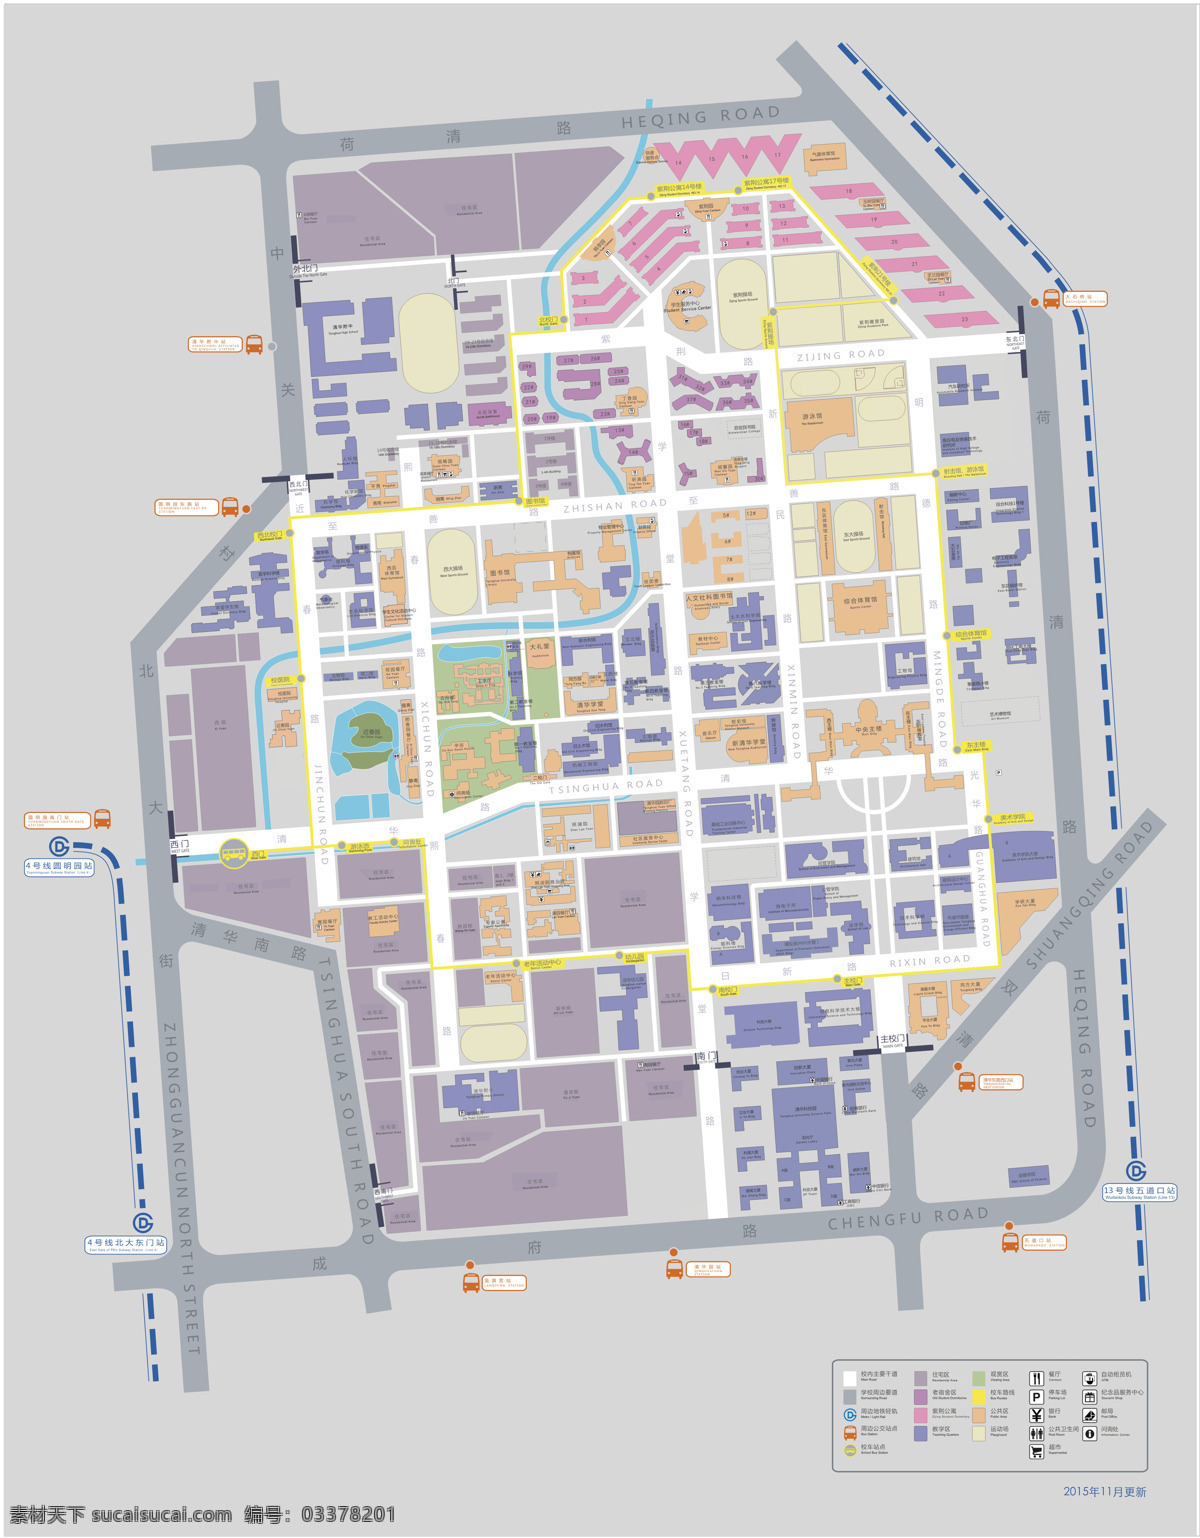 清华大学 彩色 地图 map 建筑平面 平面示意图 活动区域图 图示图元